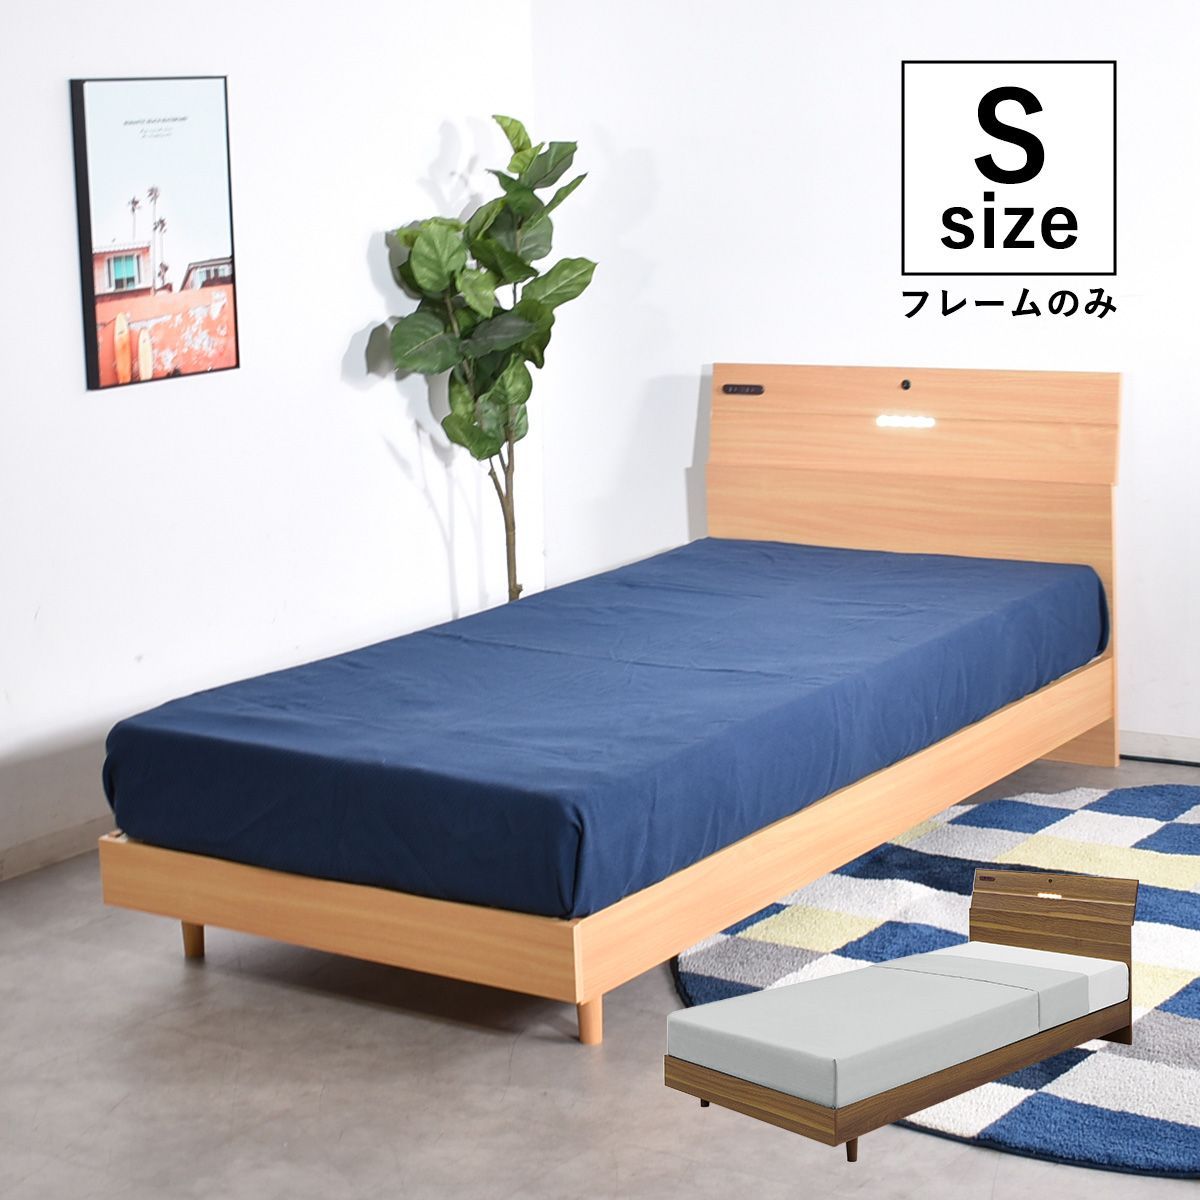 シングルベッド コンセント付き フレーム シングルサイズ 照明付き 木製 コンセント ベッドフレーム シングル すのこベッド すのこ ベットフレーム  シンプル